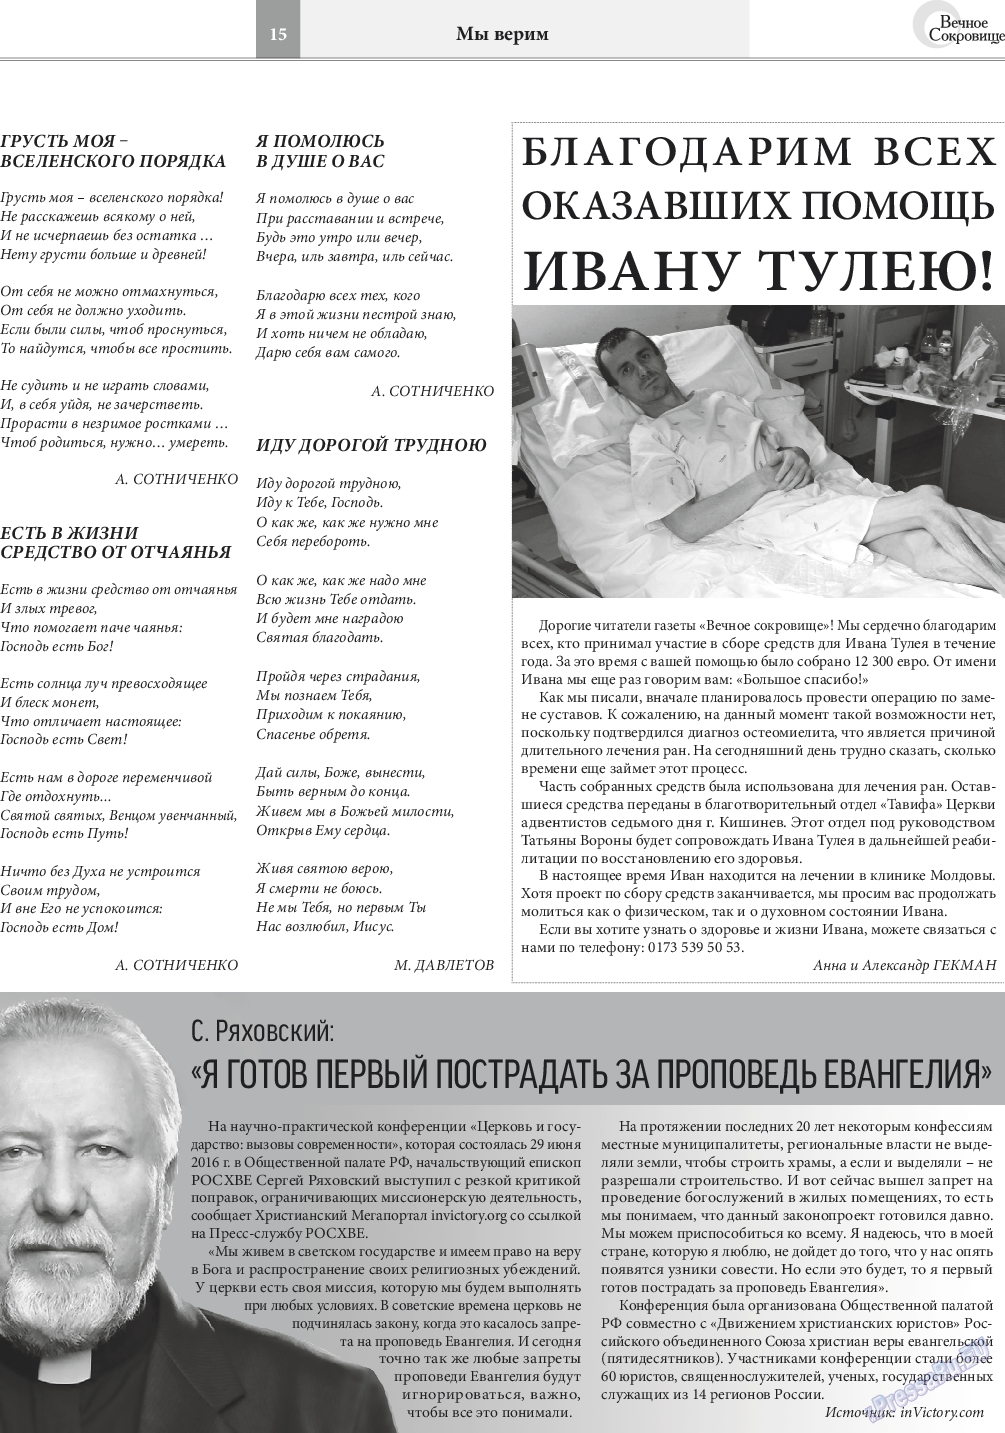 Вечное сокровище, газета. 2016 №4 стр.15